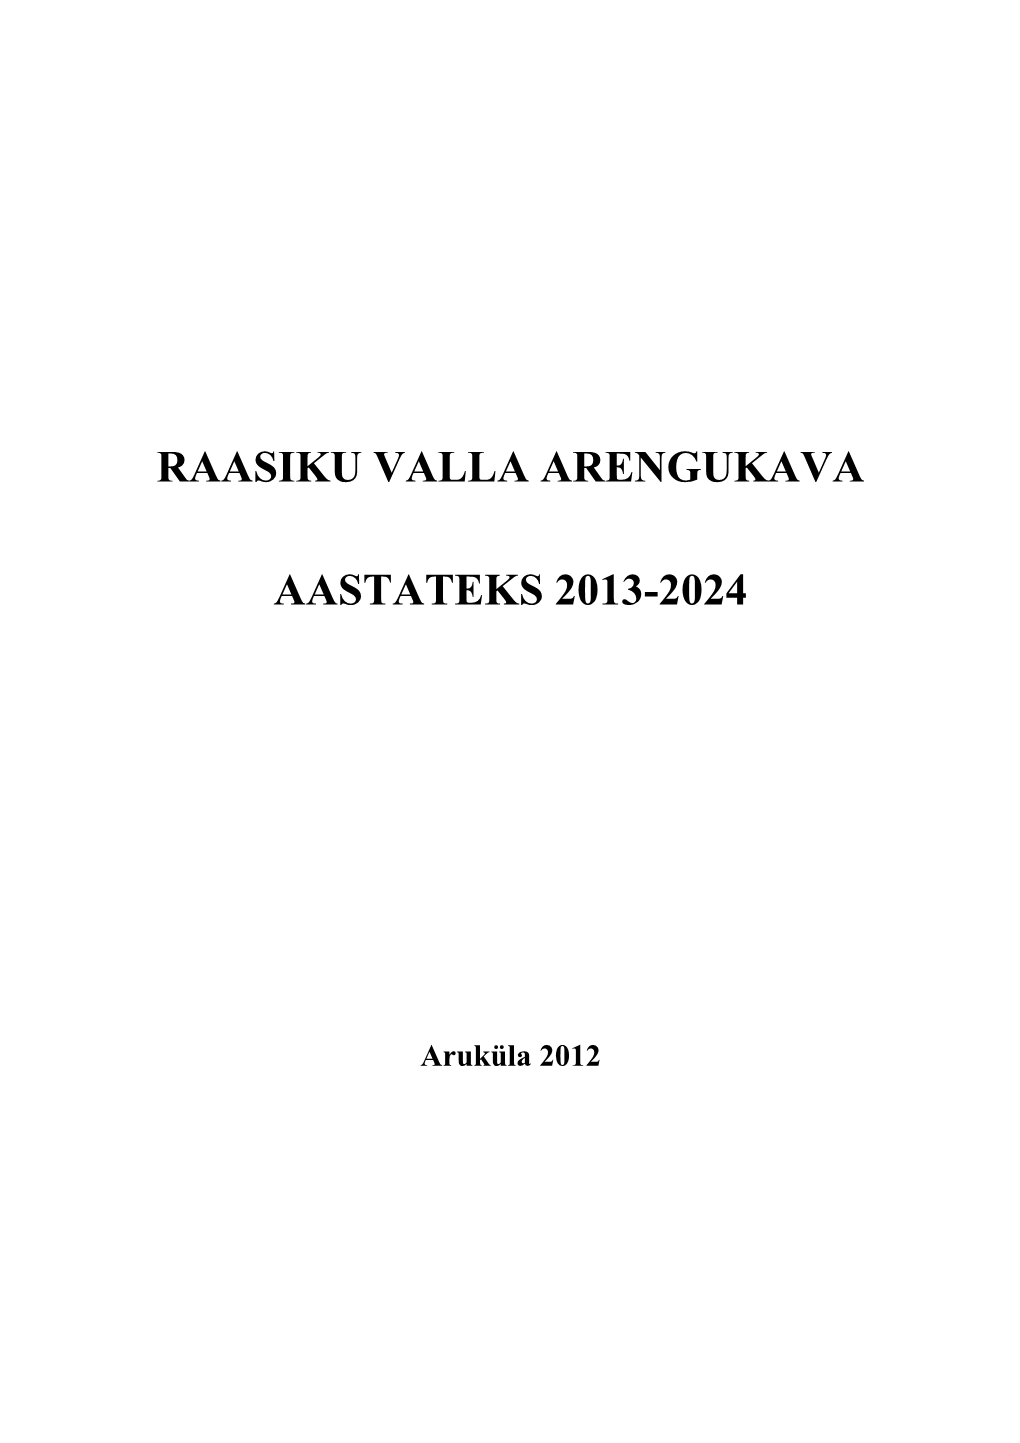 Raasiku Valla Arengukava Aastateks 2013-2024